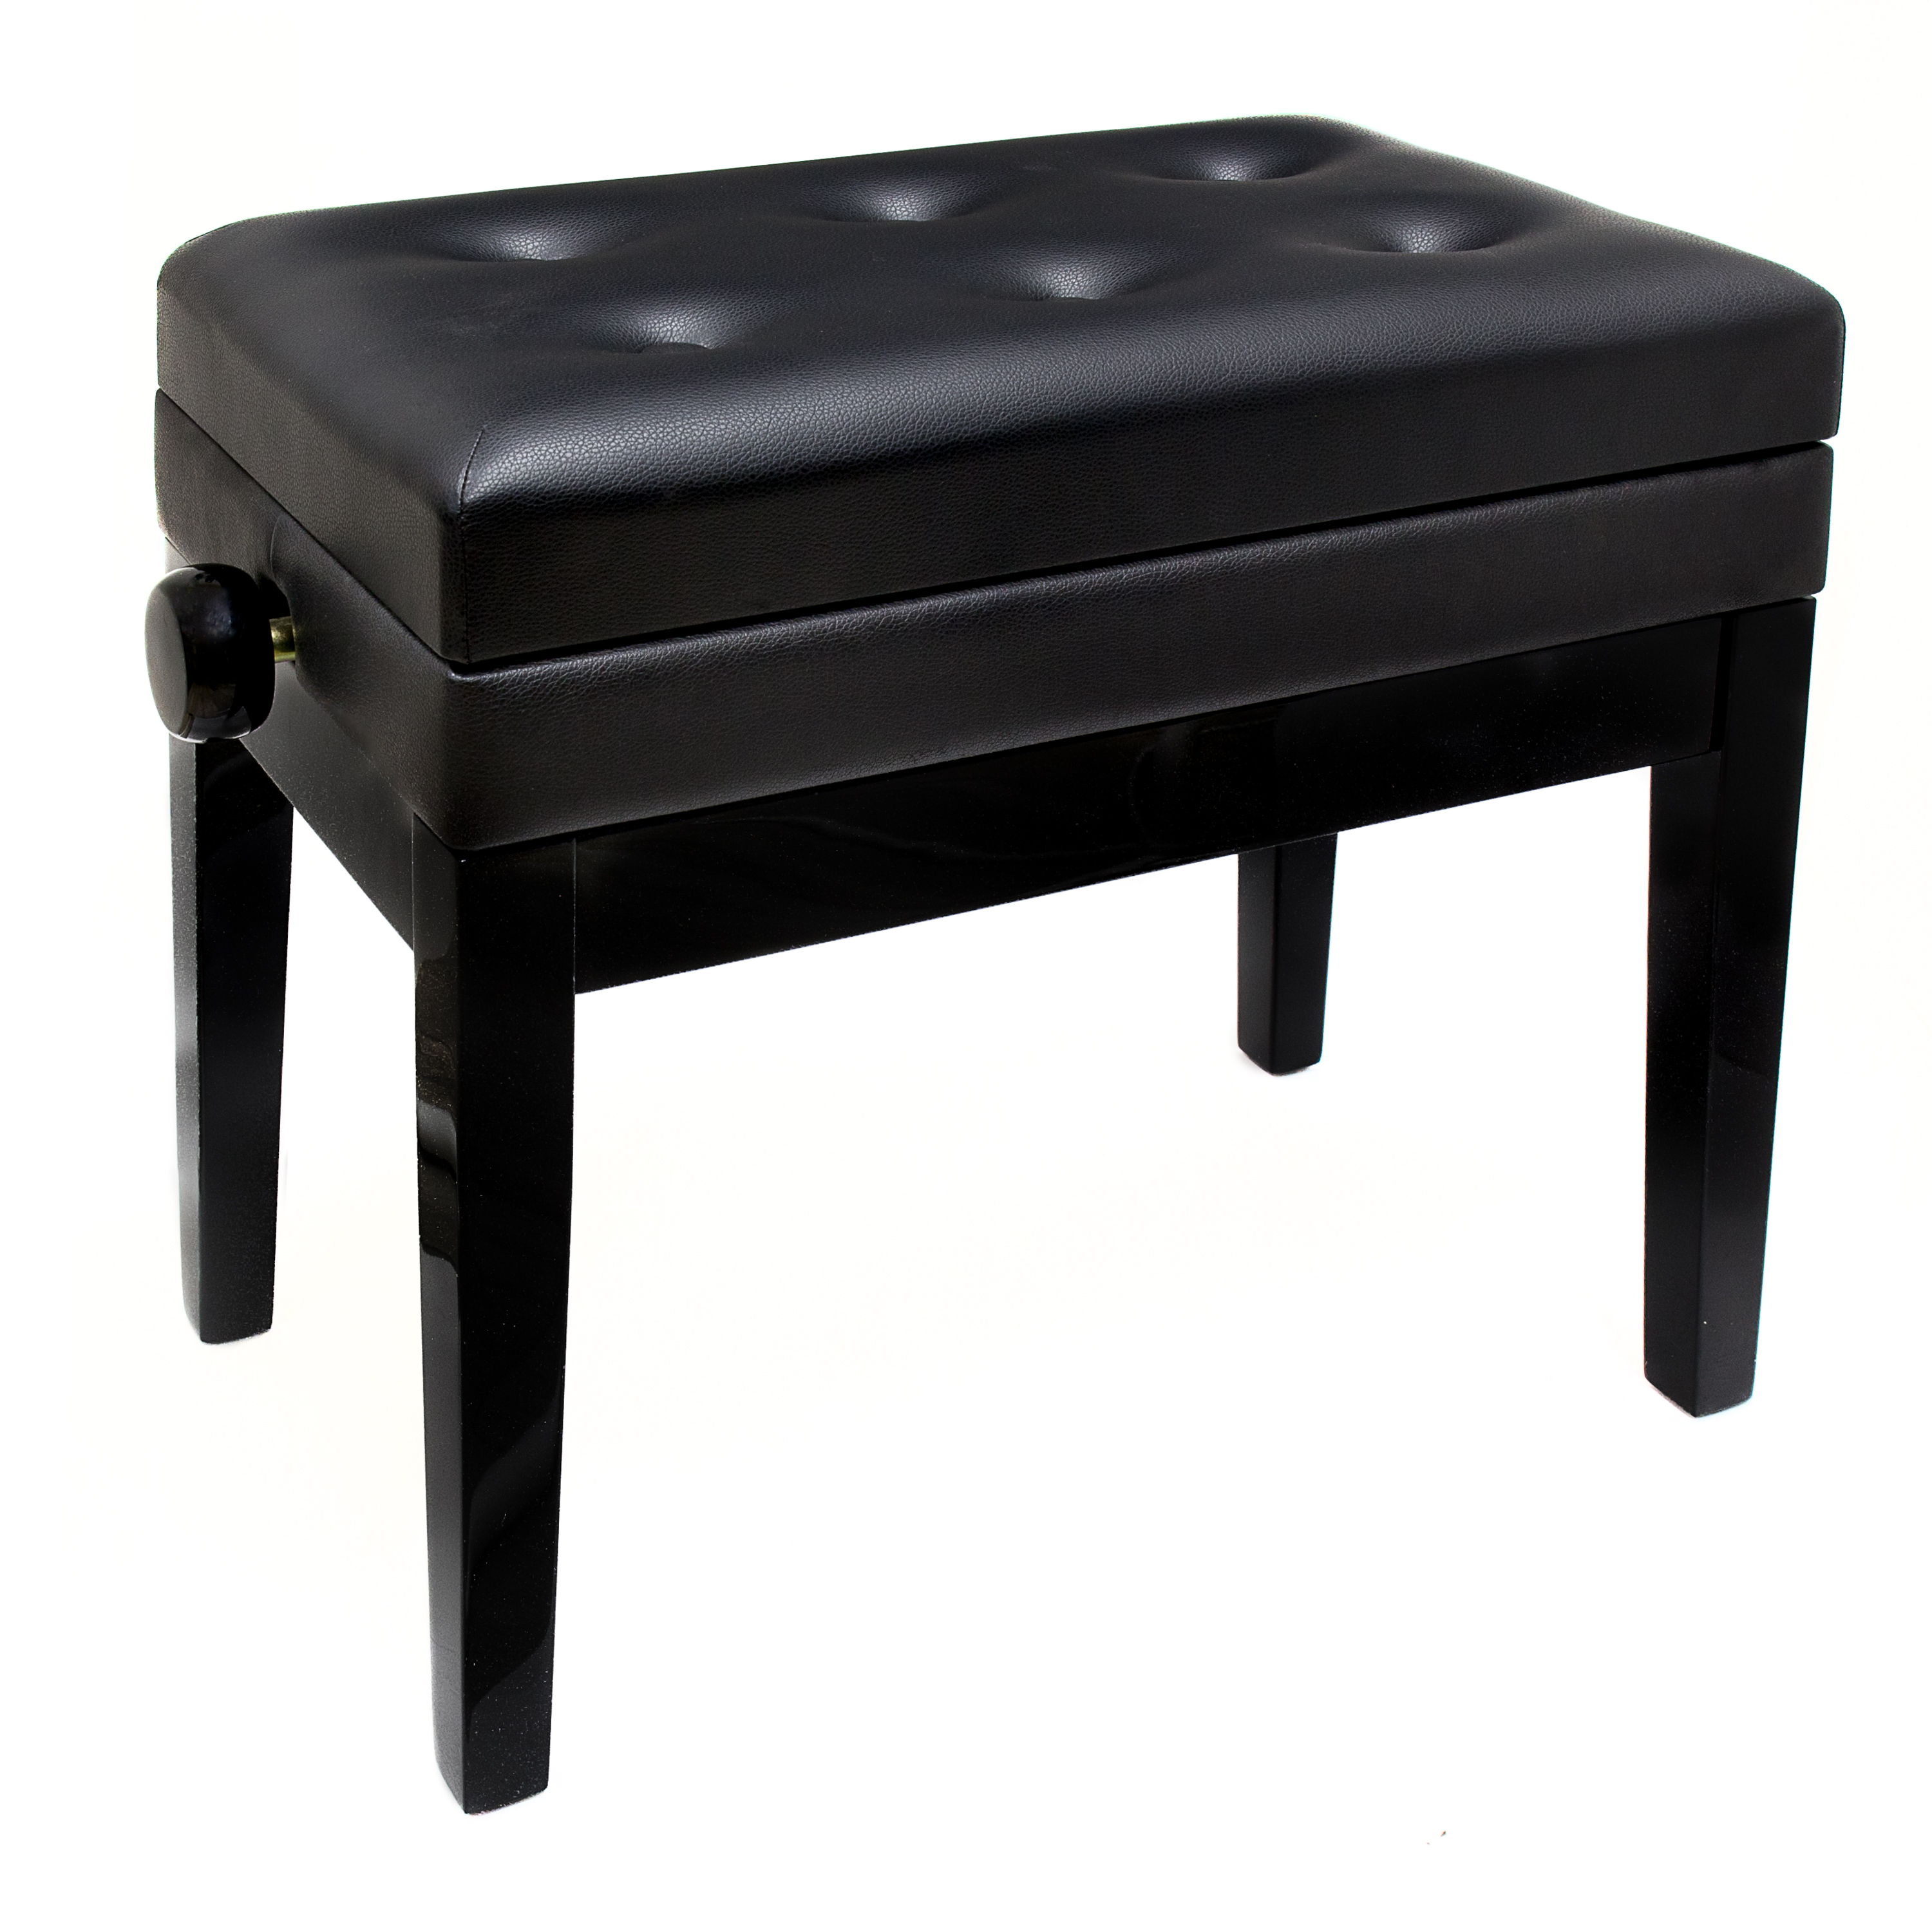 Банкетка для пианино Palette HY-PJ007 черная, полированная